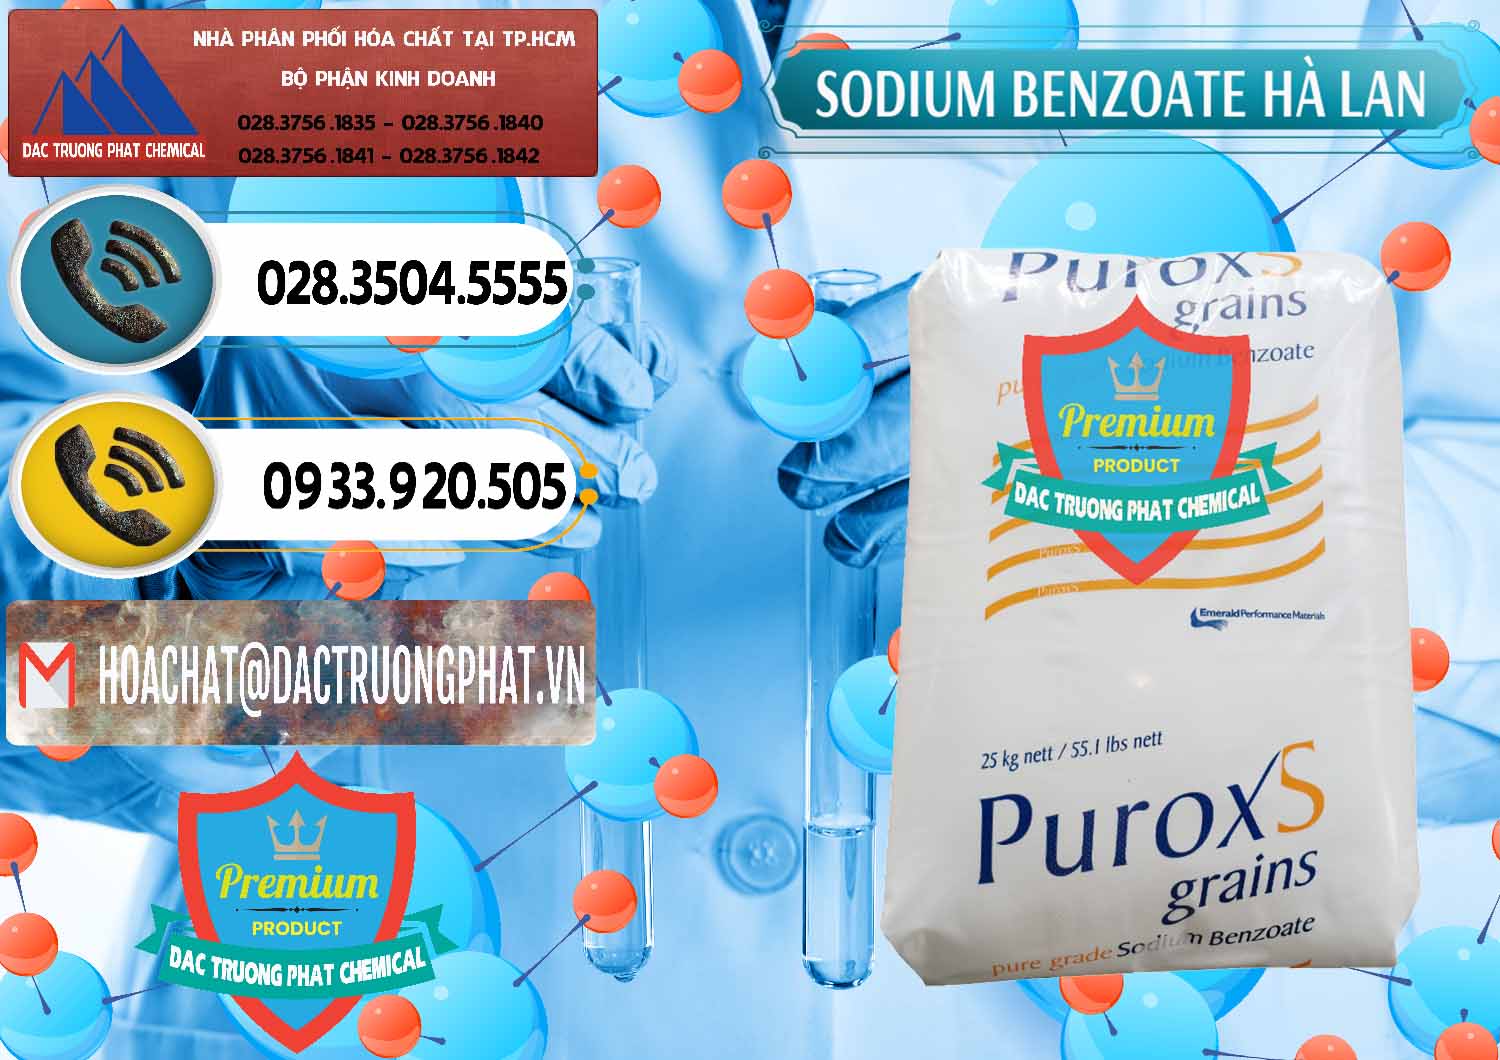 Công ty chuyên bán ( cung cấp ) Sodium Benzoate - Mốc Bột Puroxs Hà Lan Netherlands - 0467 - Cty nhập khẩu _ cung cấp hóa chất tại TP.HCM - hoachatdetnhuom.vn